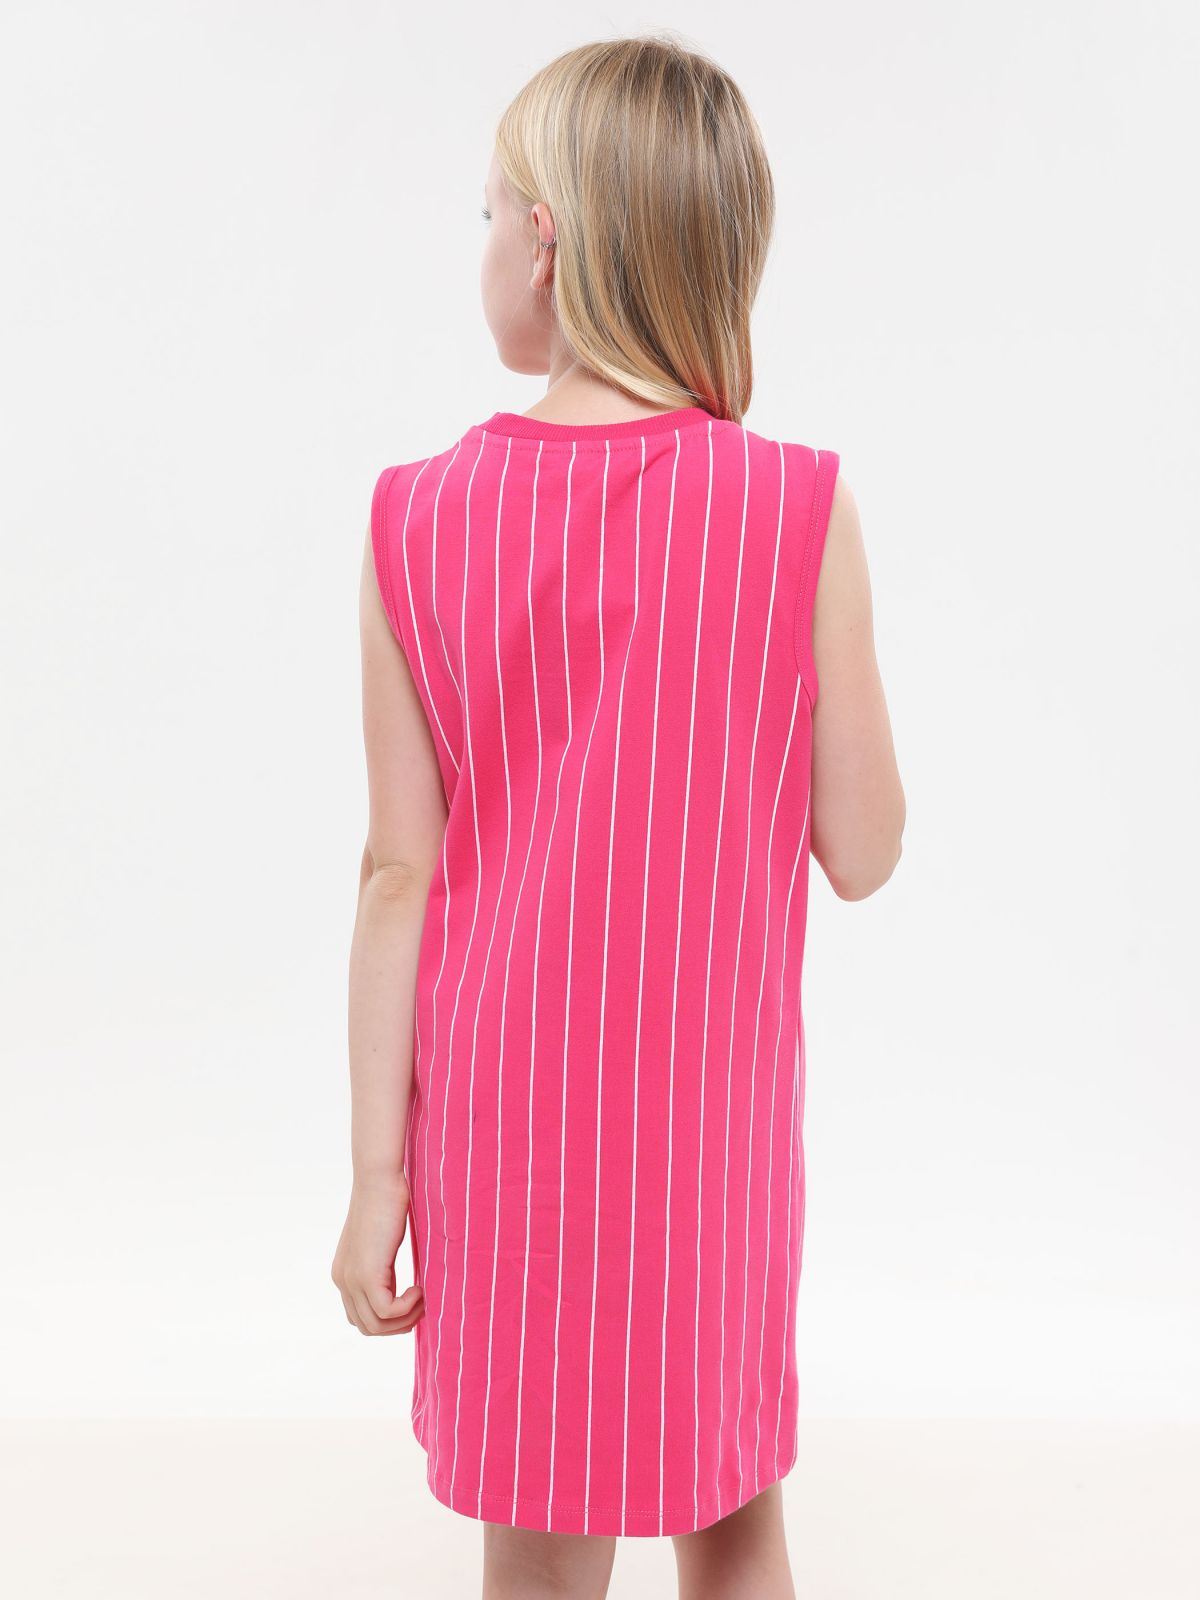  שמלת מיני בהדפס פסים עם לוגו של FILA